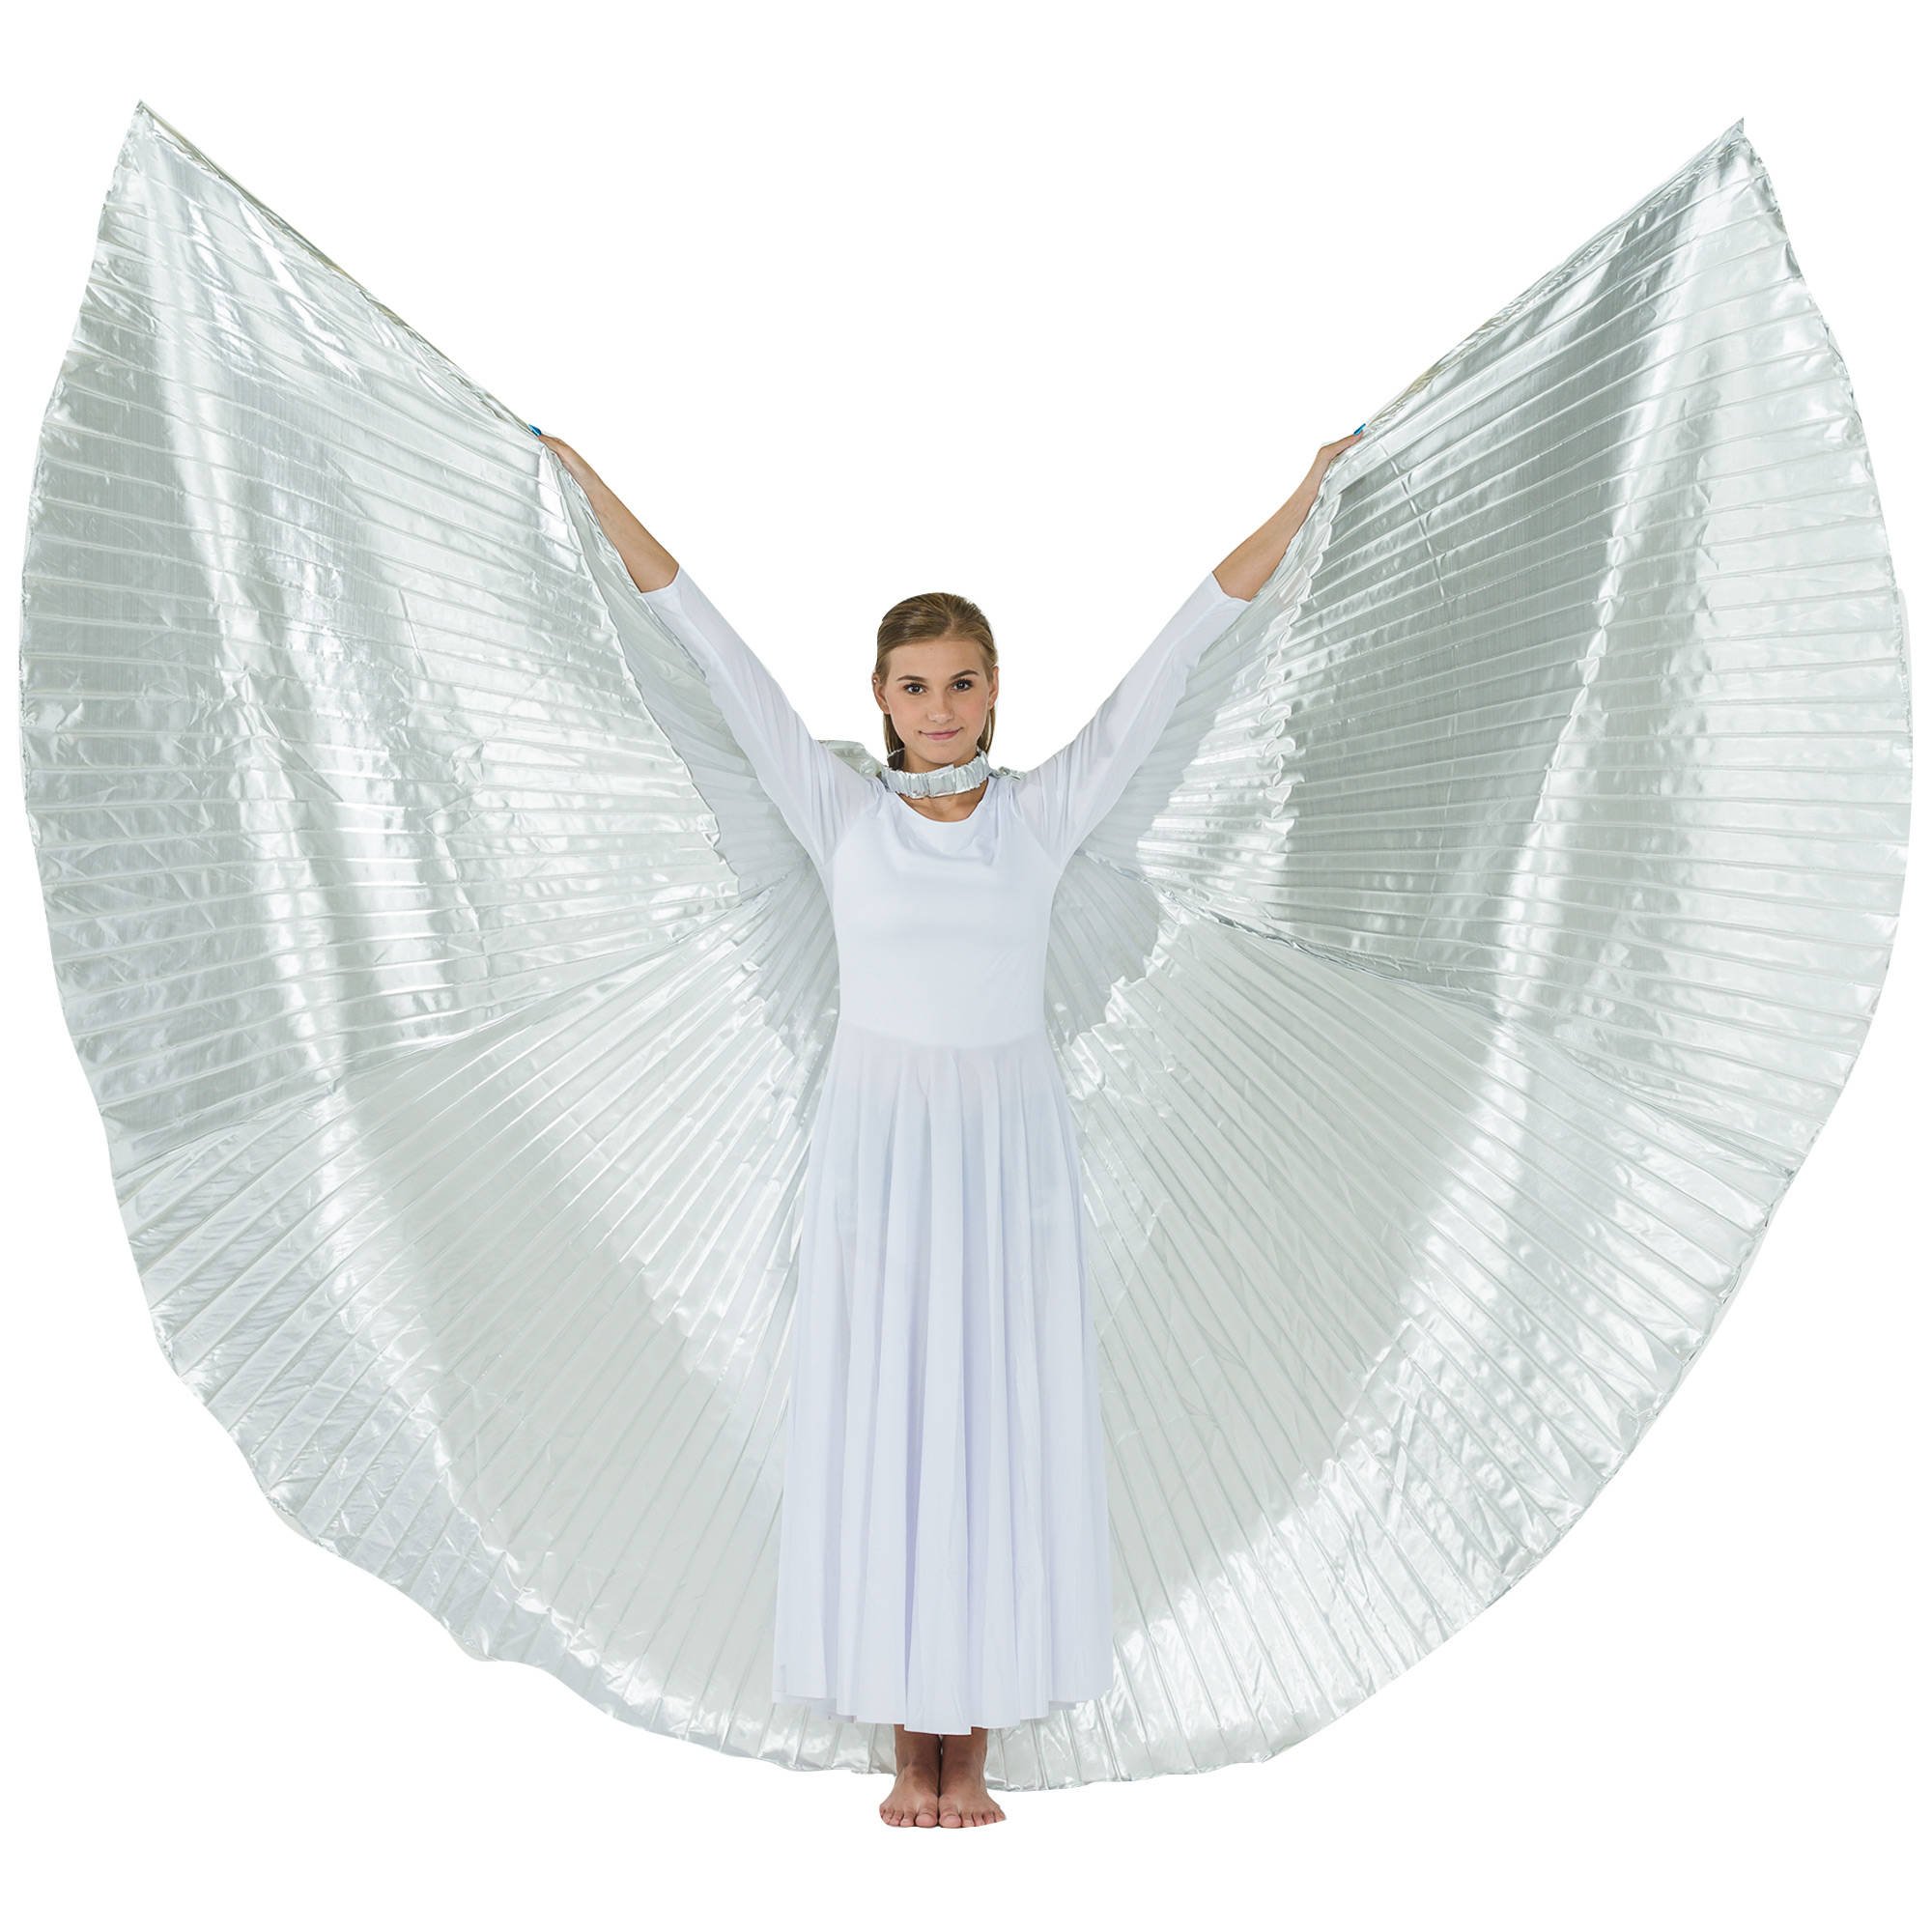 Worship Angel Wing: angel wings, angel wings costume, dancing wings